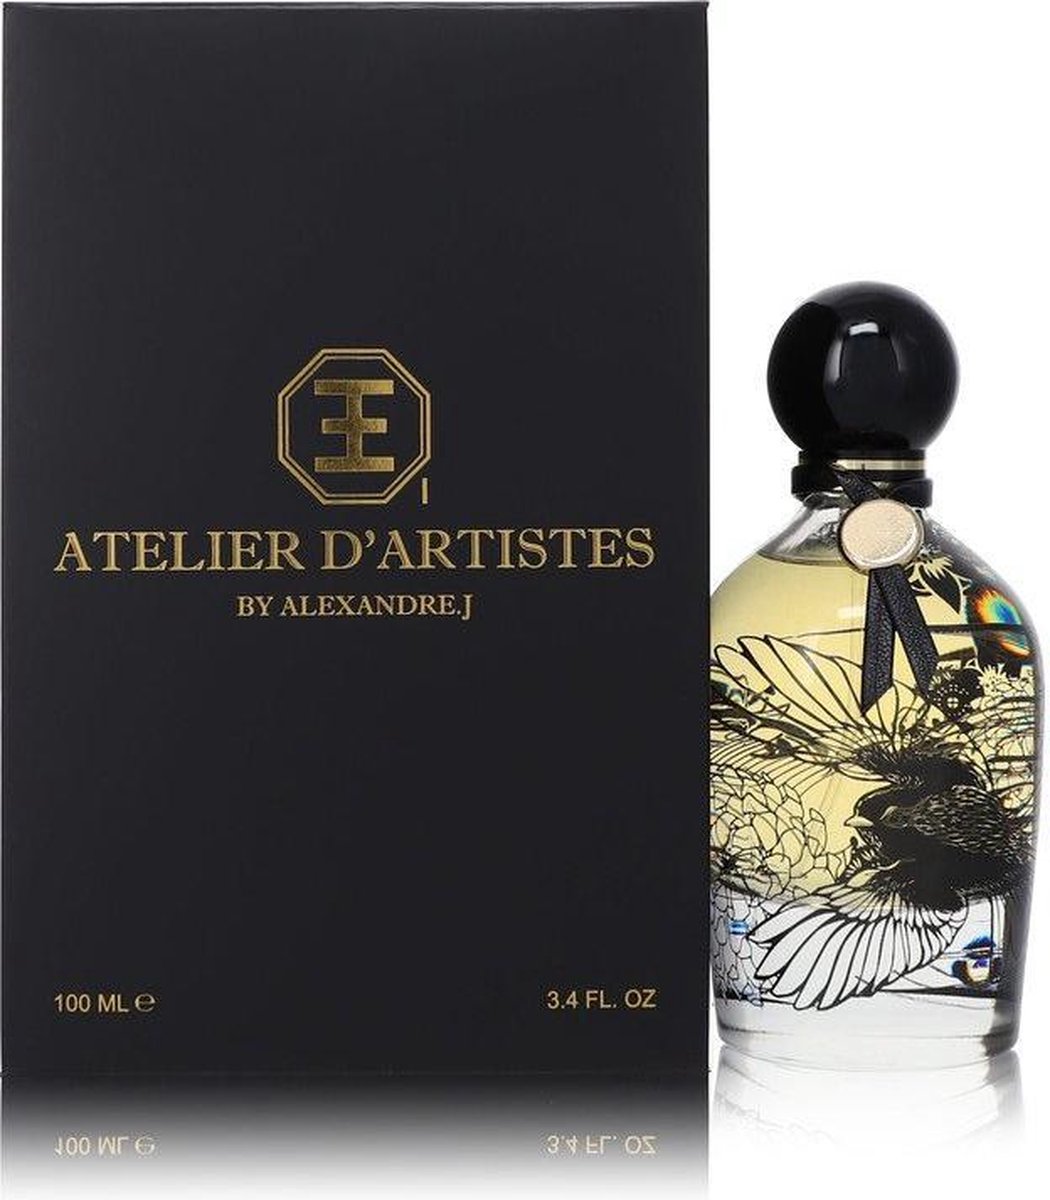 Atelier D'artistes E 1 by Alexandre J 100 ml - Eau De Parfum Spray (Unisex)